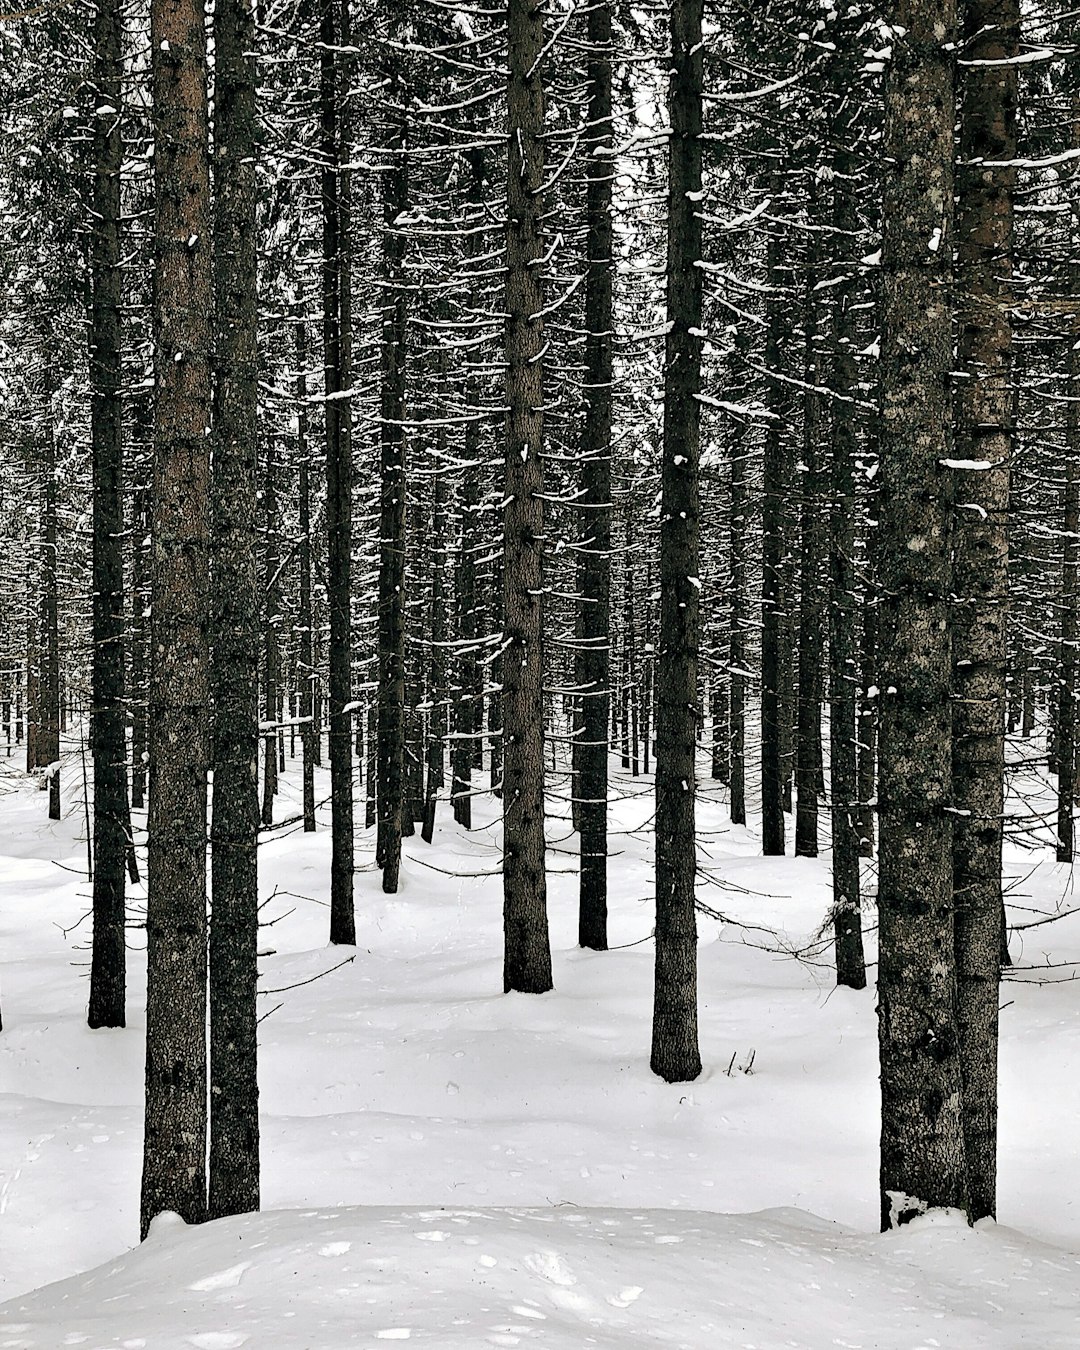 Spruce-fir forest photo spot Paneveggio - Pale di San Martino Italy